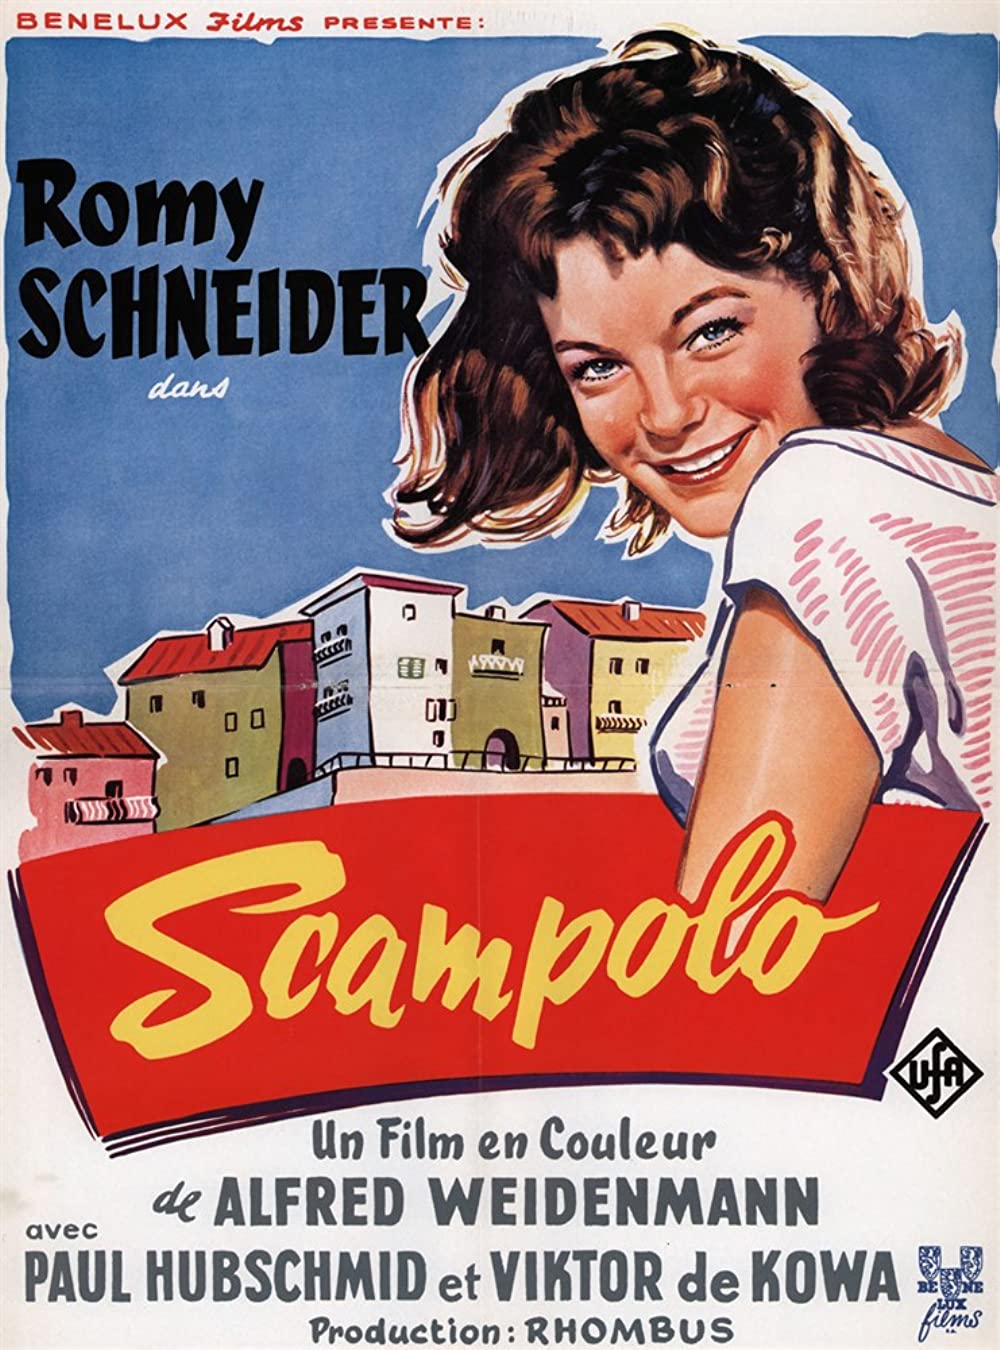 Filmbeschreibung zu Scampolo